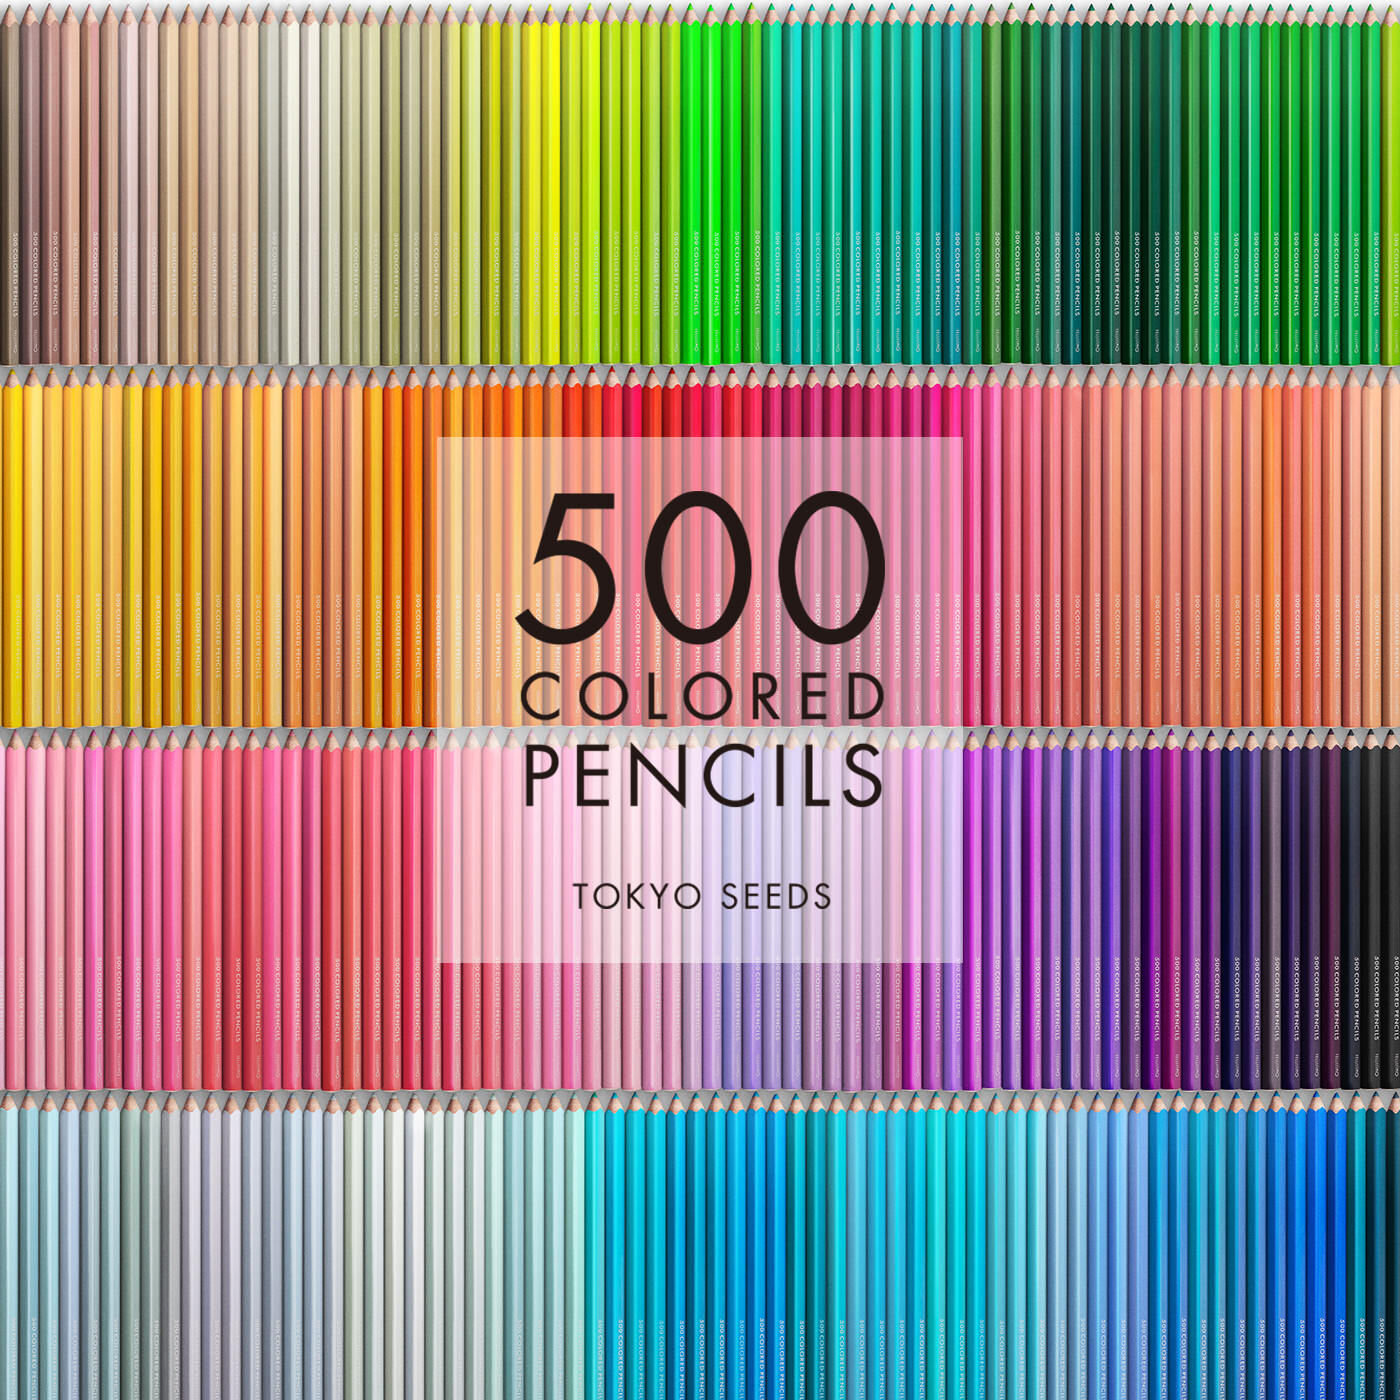 Real Stock|【15/500 CANDY CLOUD】500色の色えんぴつ TOKYO SEEDS|1992年、世界初の「500色」という膨大な色数の色えんぴつが誕生して以来、その販売数は発売当初から合わせると、世界55ヵ国10万セット以上。今回、メイド・イン・ジャパンにこだわり、すべてが新しく生まれ変わって登場しました。